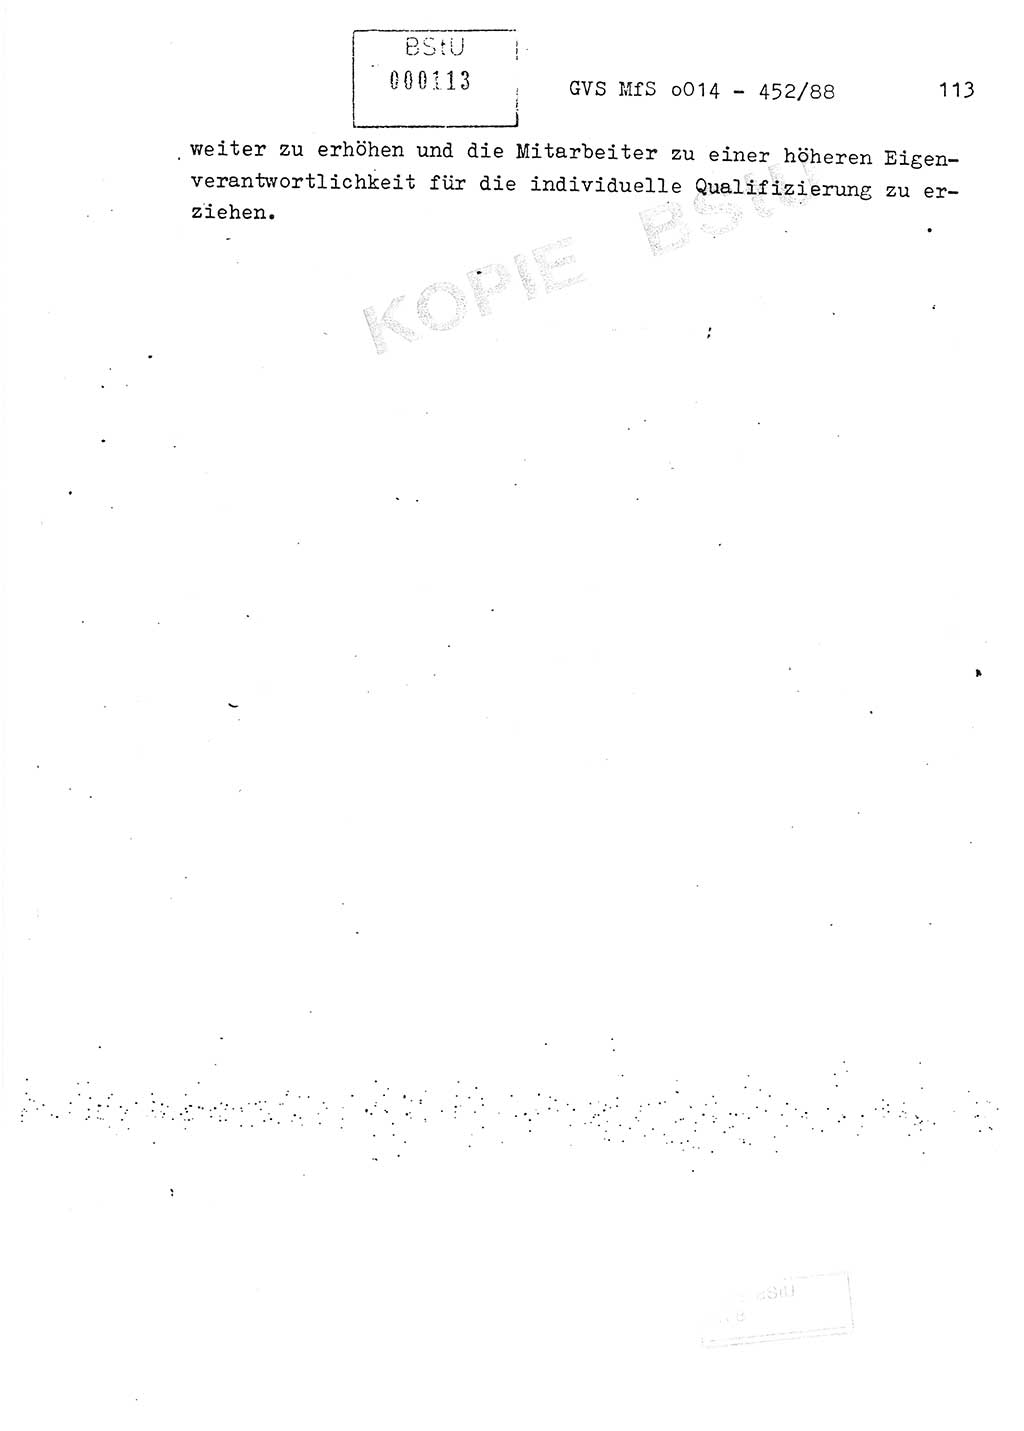 Jahresbericht der Hauptabteilung (HA) Ⅸ 1987, Einschätzung der Wirksamkeit der Untersuchungsarbeit im Jahre 1987, Ministerium für Staatssicherheit (MfS) der Deutschen Demokratischen Republik (DDR), Hauptabteilung Ⅸ, Geheime Verschlußsache (GVS) o014-452/88, Berlin 1988, Seite 113 (Einsch. MfS DDR HA Ⅸ GVS o014-452/88 1987, S. 113)